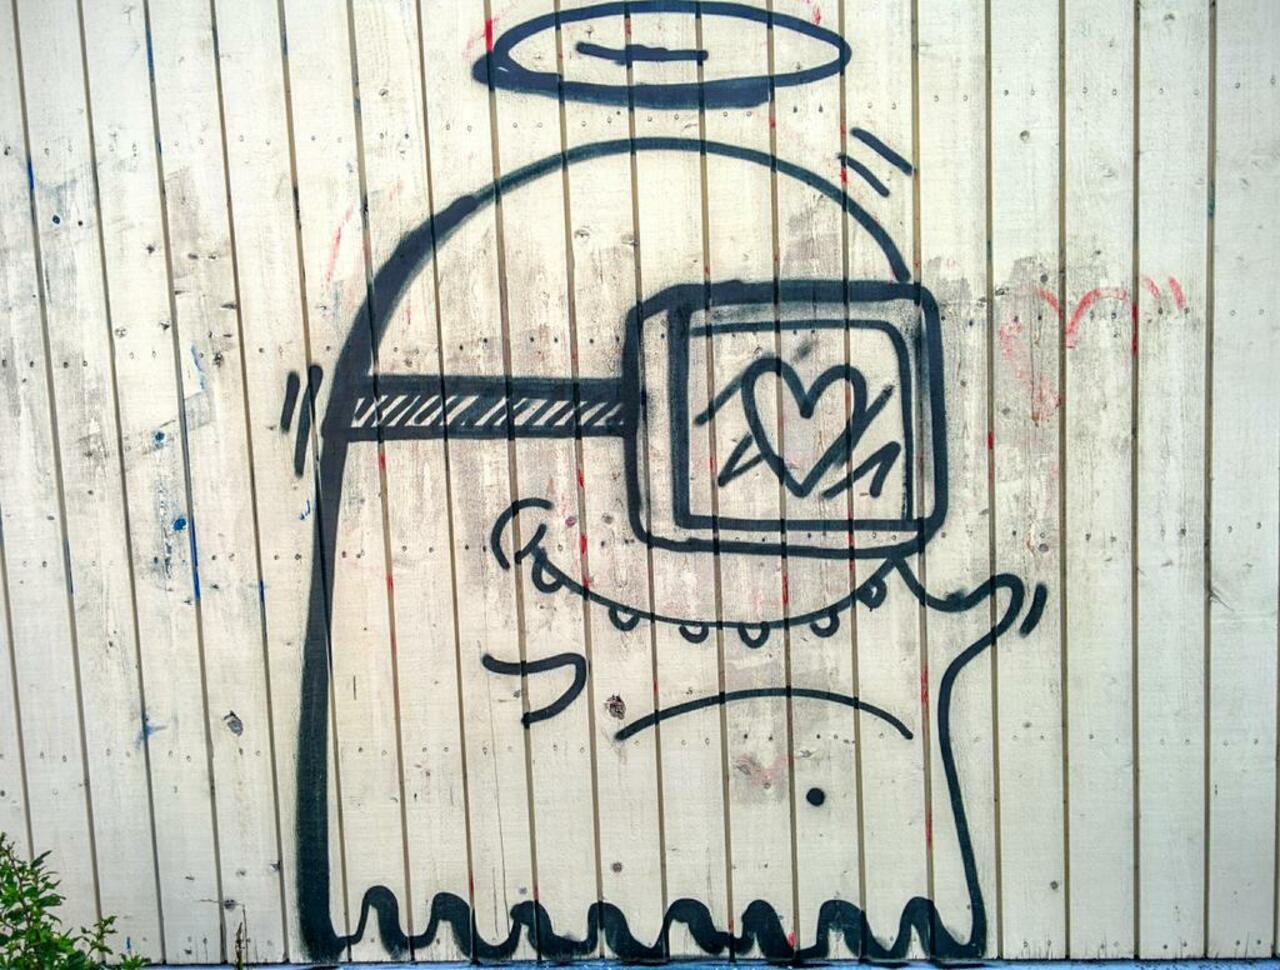 RT @0C5: Happy alien in love?  #Turku #Portsa #Suomi #Finland #Streetart #Graffiti #Urban #Alien http://t.co/toiUKwxqWf